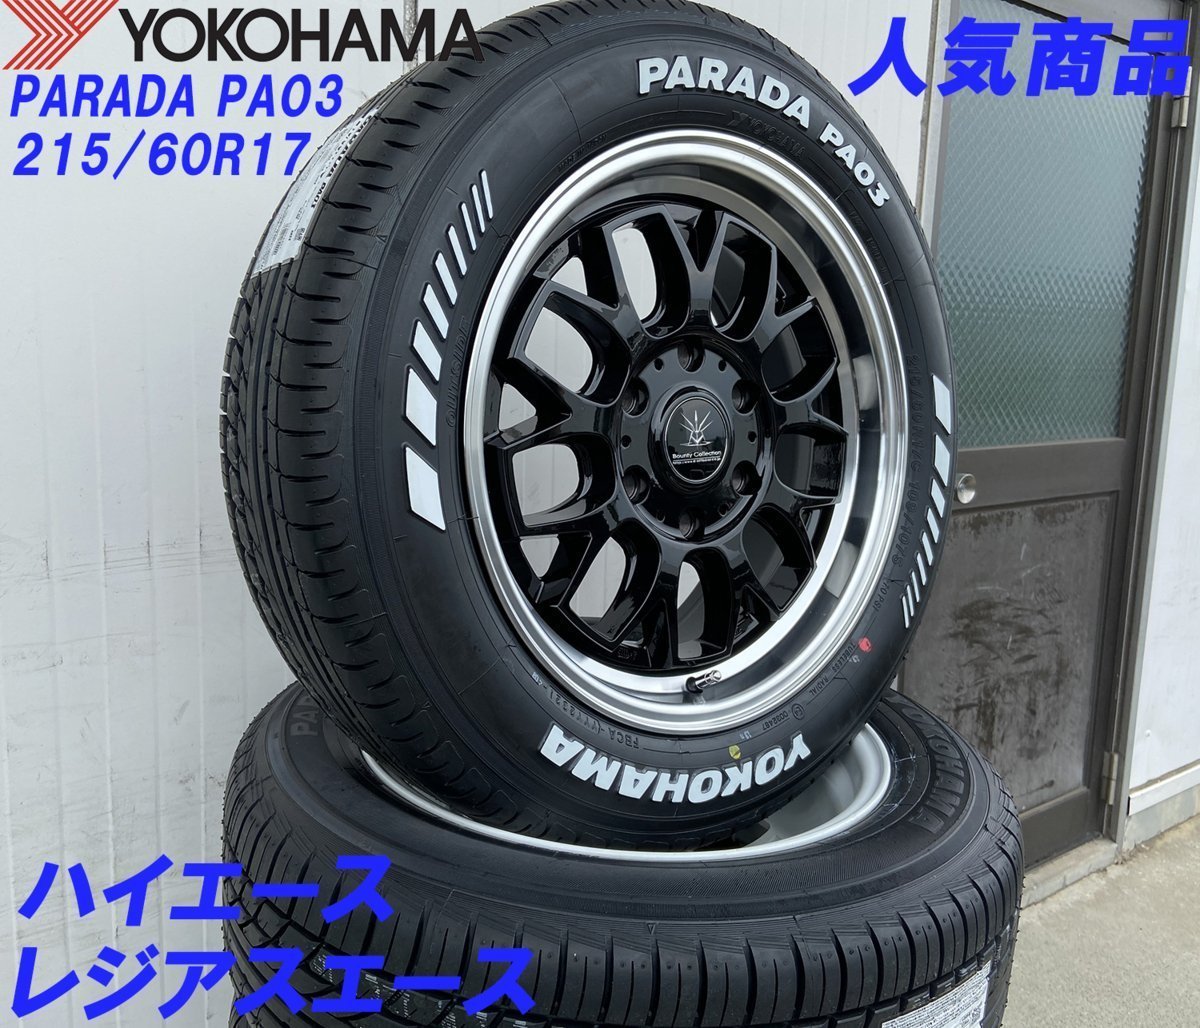 イチオシセット Bounty Collection BD00 HIACE 200系ハイエース YOKOHAMA PARADA PA03 215/60R17 新品タイヤホイールセット 17インチ_画像4